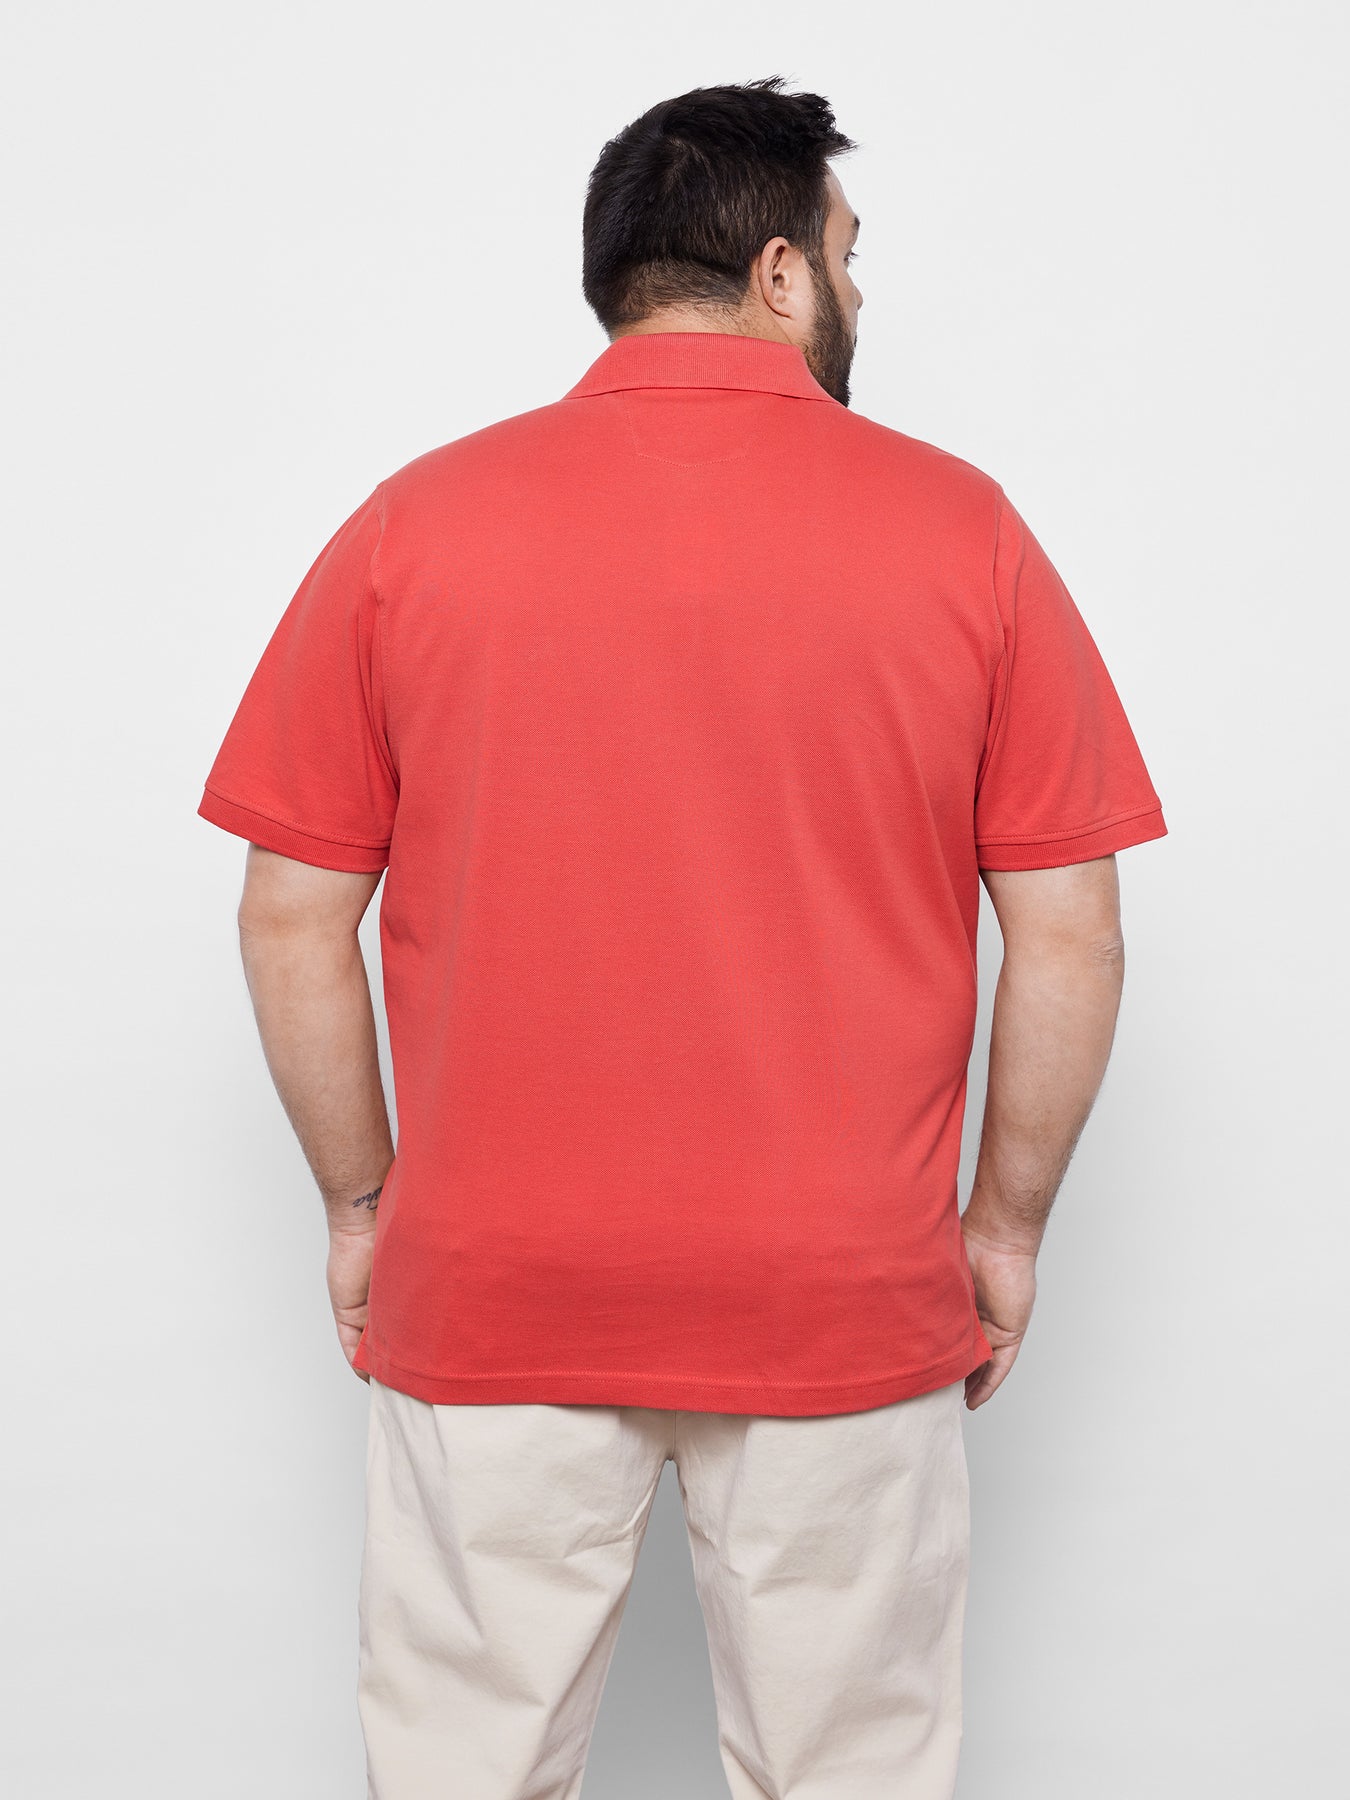 Piqué polo shirt, plain color – LERROS SHOP